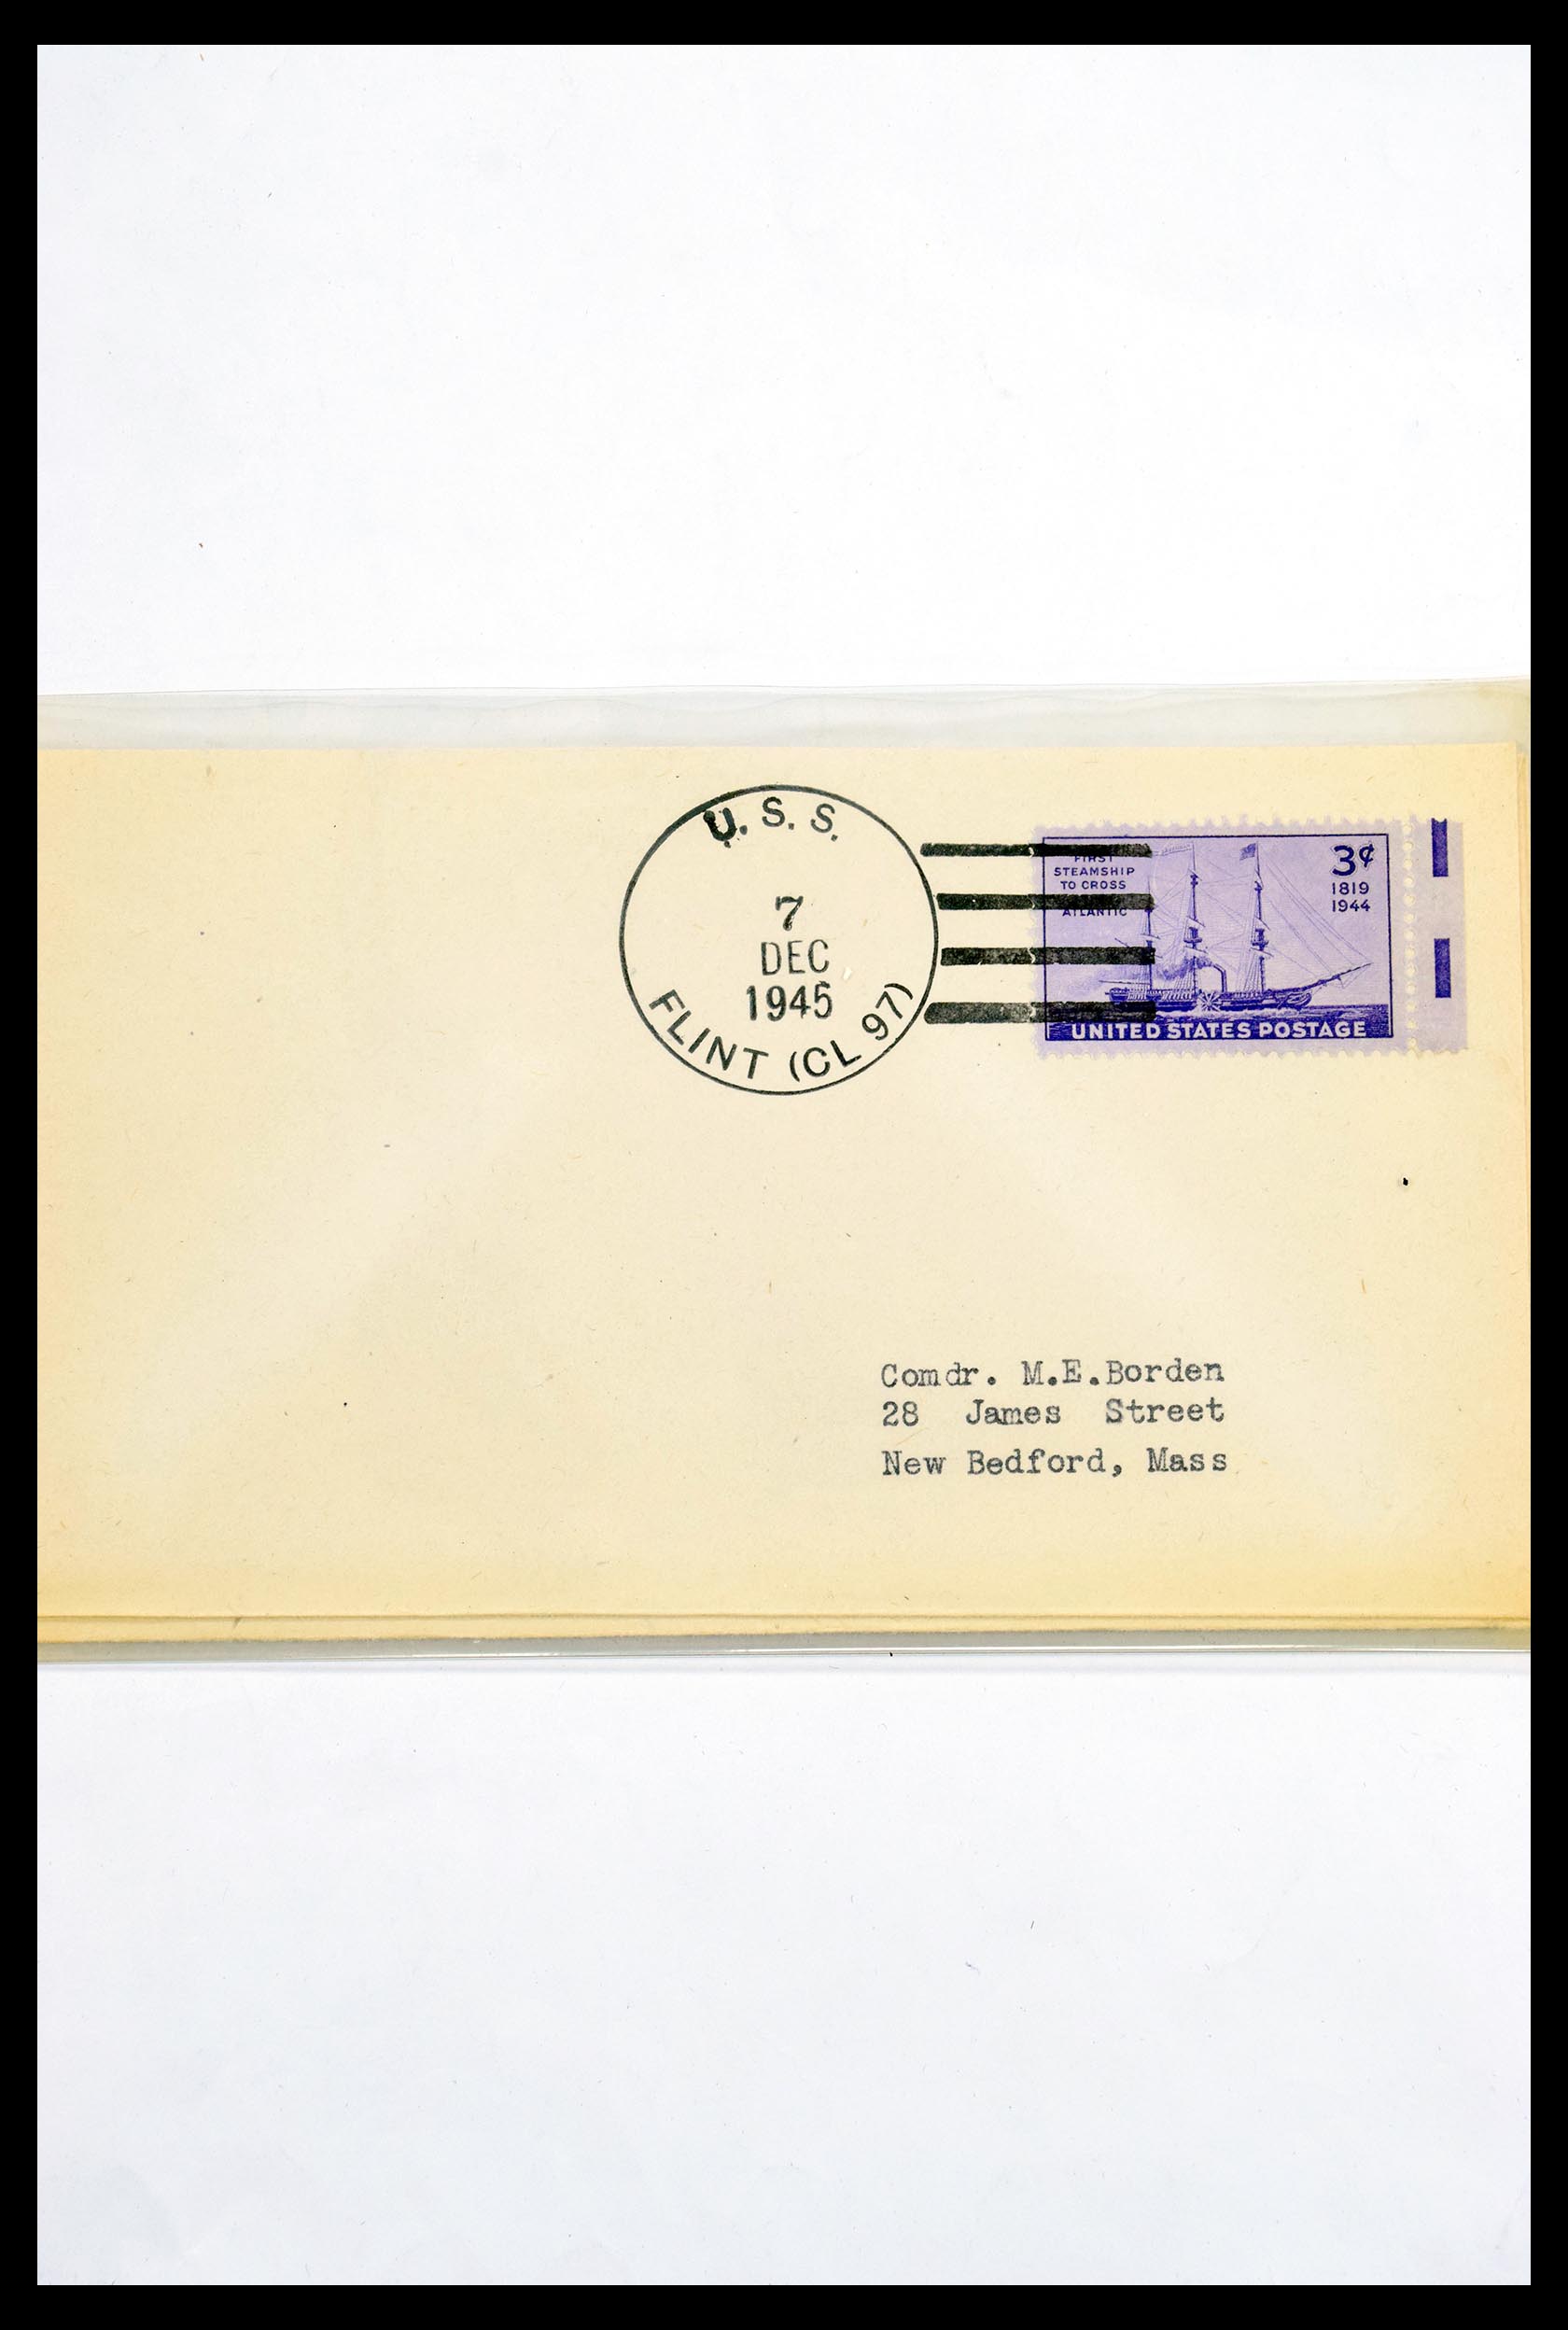 30341 312 - 30341 USA scheepspost brieven 1930-1970.